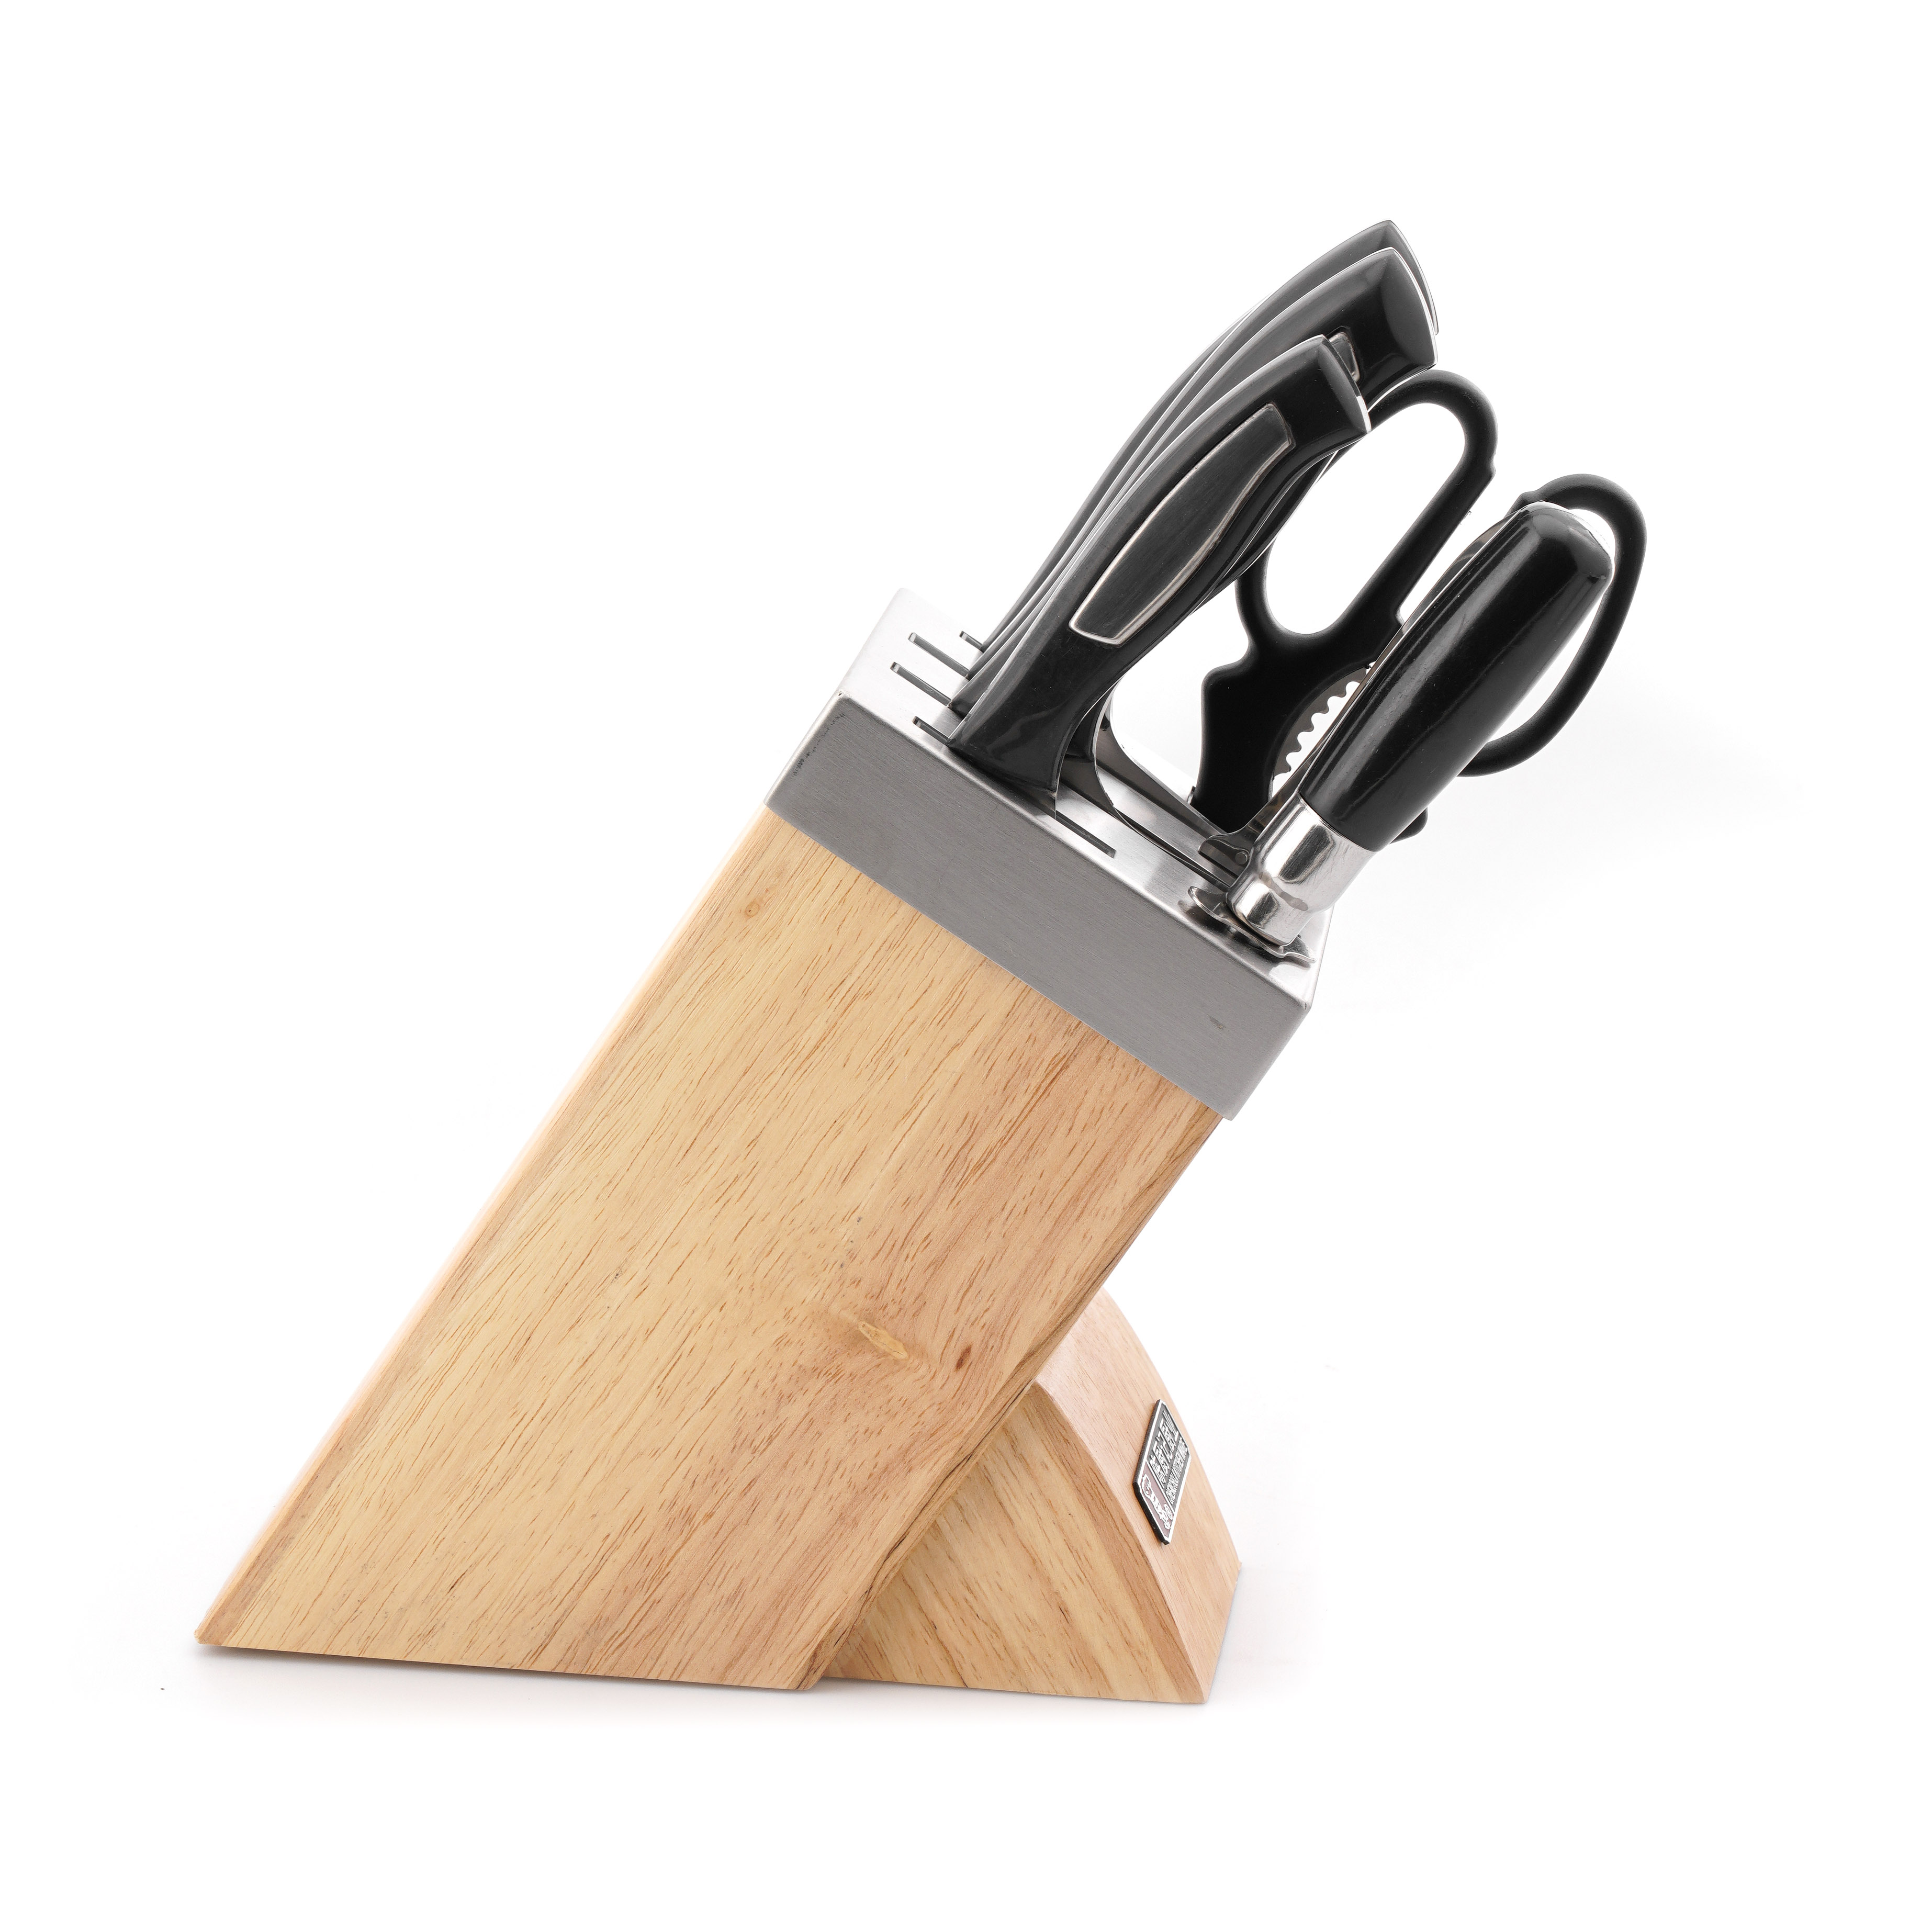 Bộ dao nhà bếp 8 món (4 dao, 1 dao bào, 1 đồ mài, 1 kéo, 1 hộp đựng dao bằng gỗ)